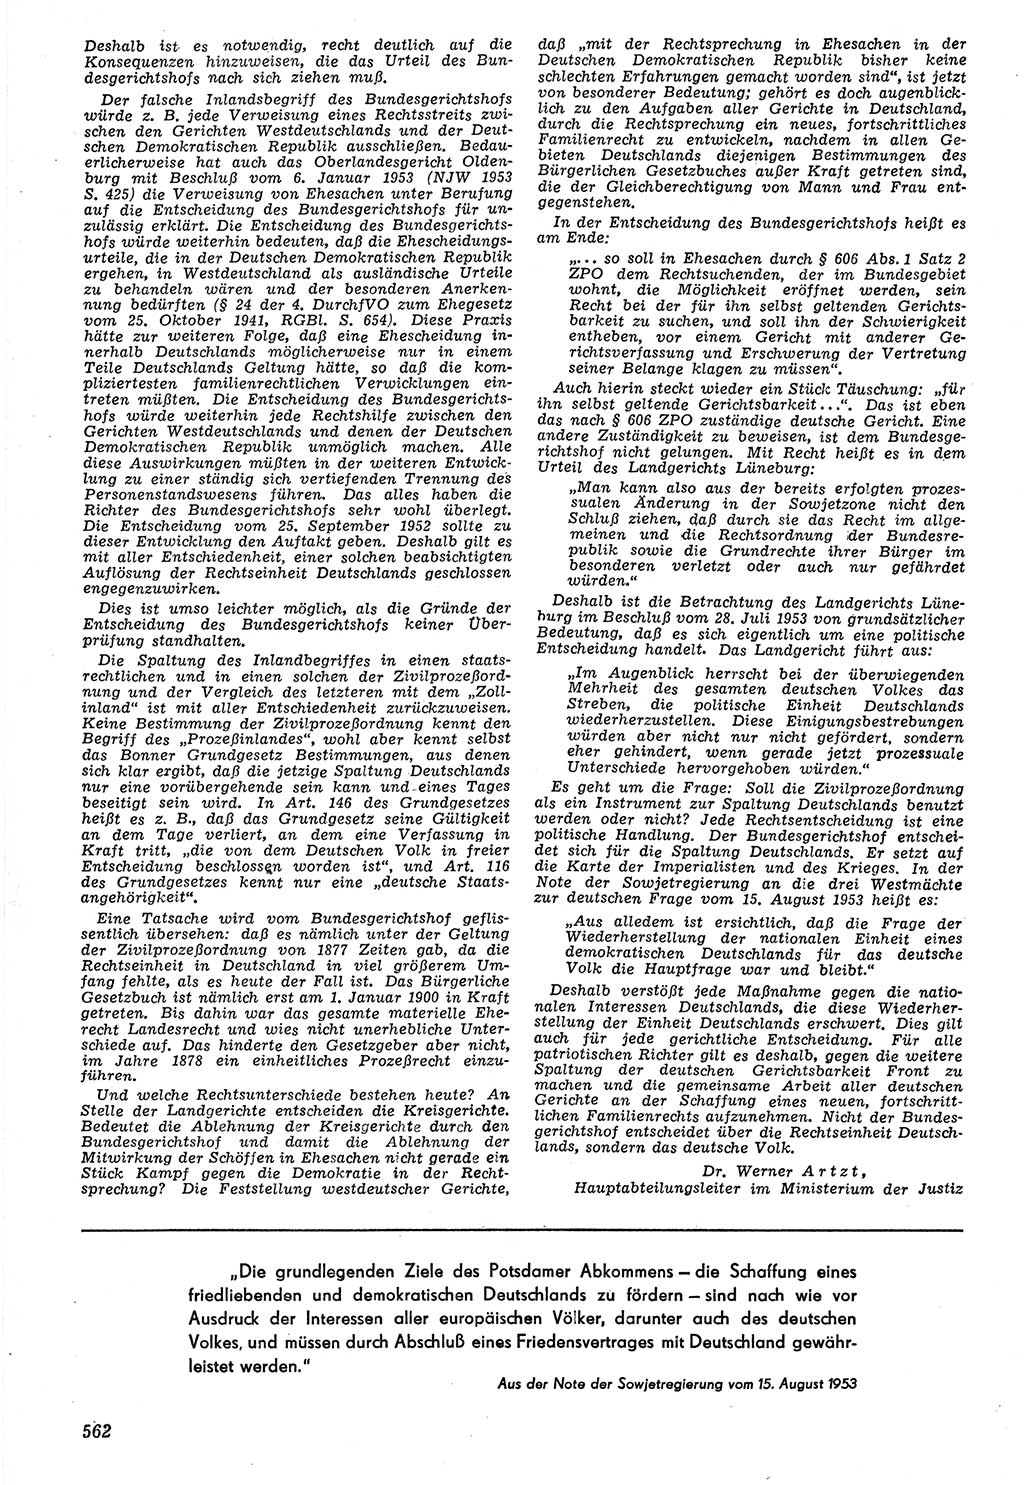 Neue Justiz (NJ), Zeitschrift für Recht und Rechtswissenschaft [Deutsche Demokratische Republik (DDR)], 7. Jahrgang 1953, Seite 562 (NJ DDR 1953, S. 562)